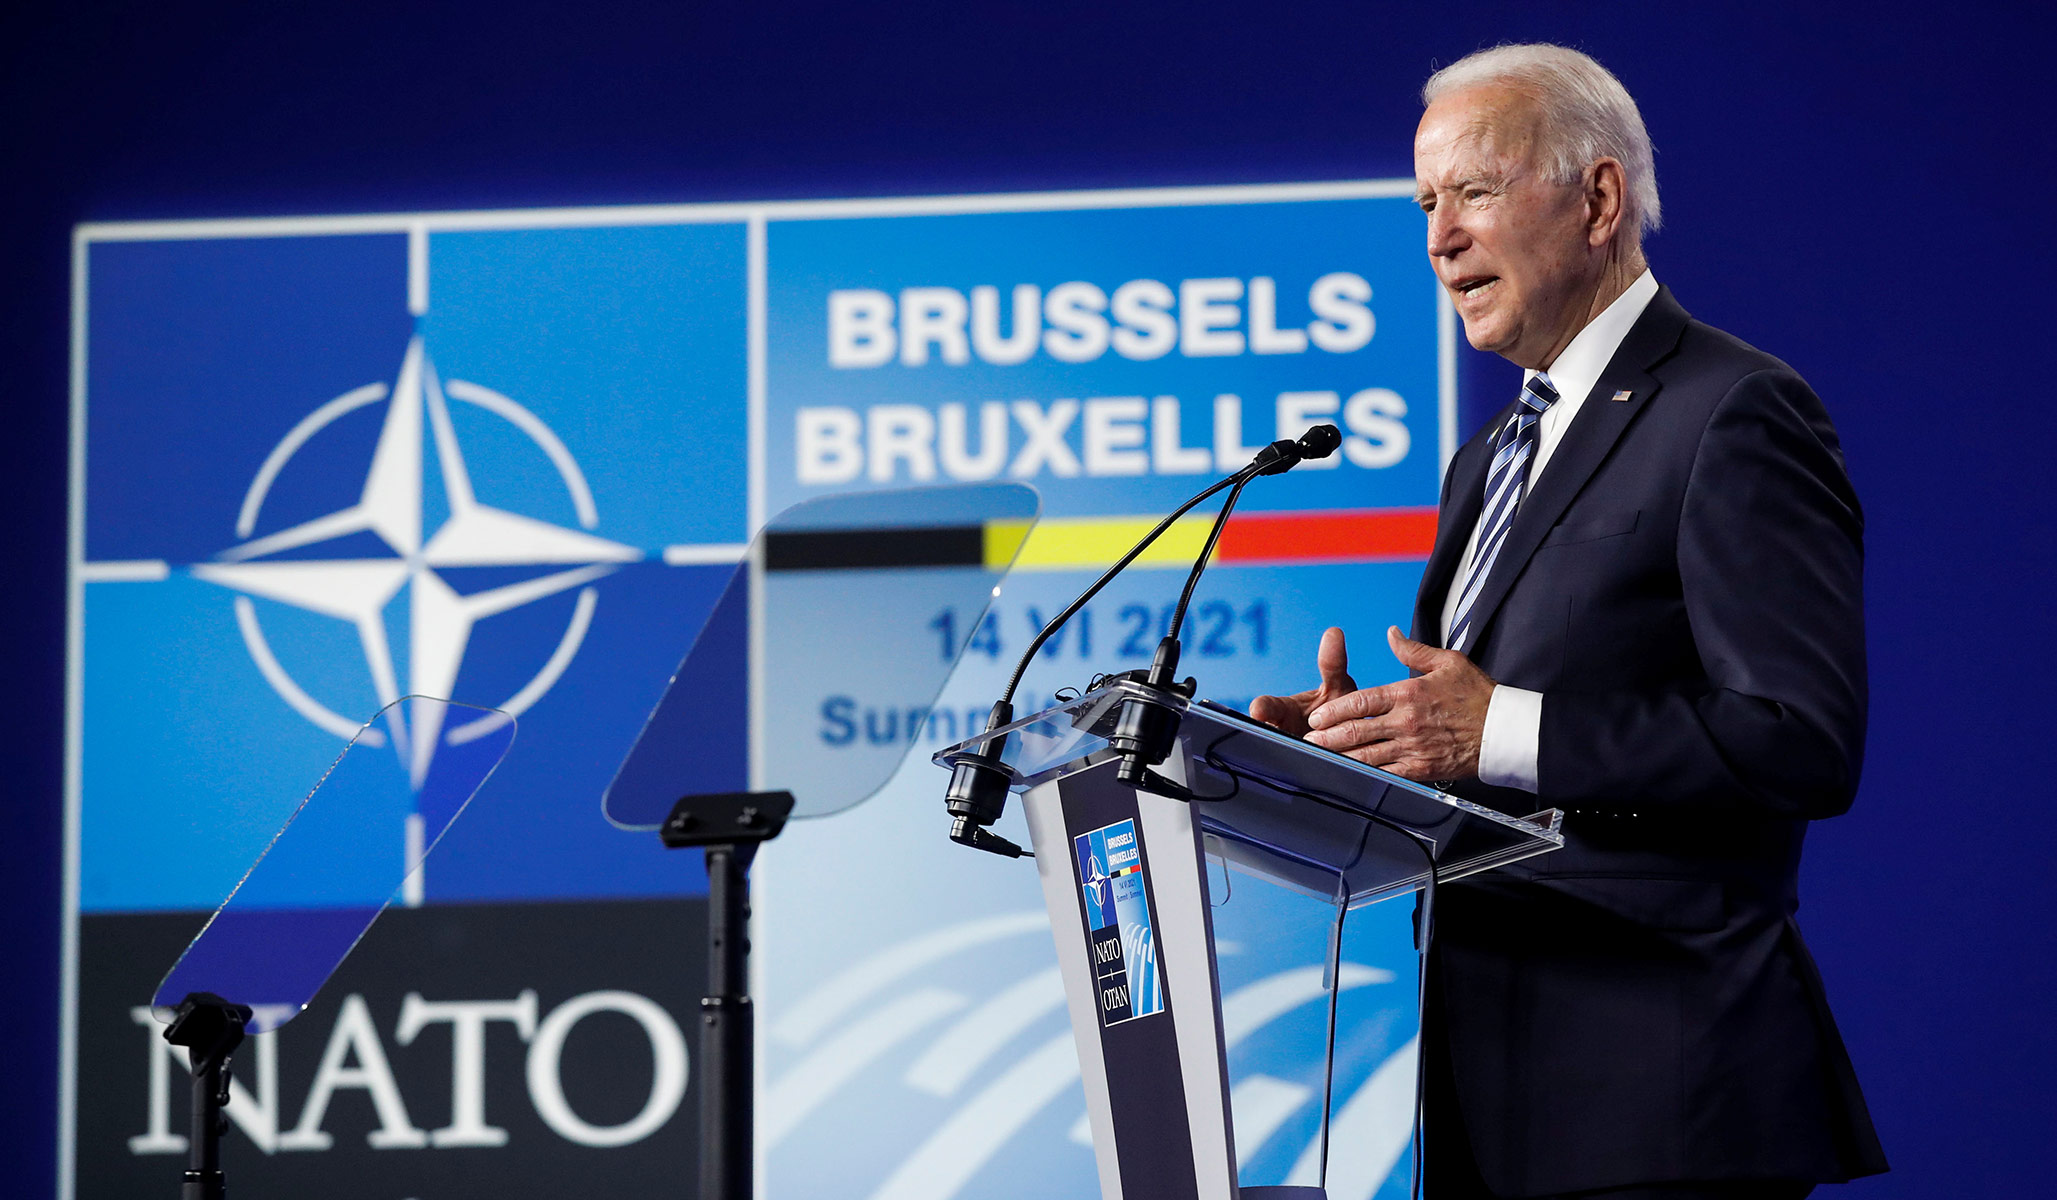 Нато конференции. Байден саммит НАТО. Саммит НАТО В Брюсселе Байден. Джо Байден НАТО. Саммит НАТО В Брюсселе 2021.